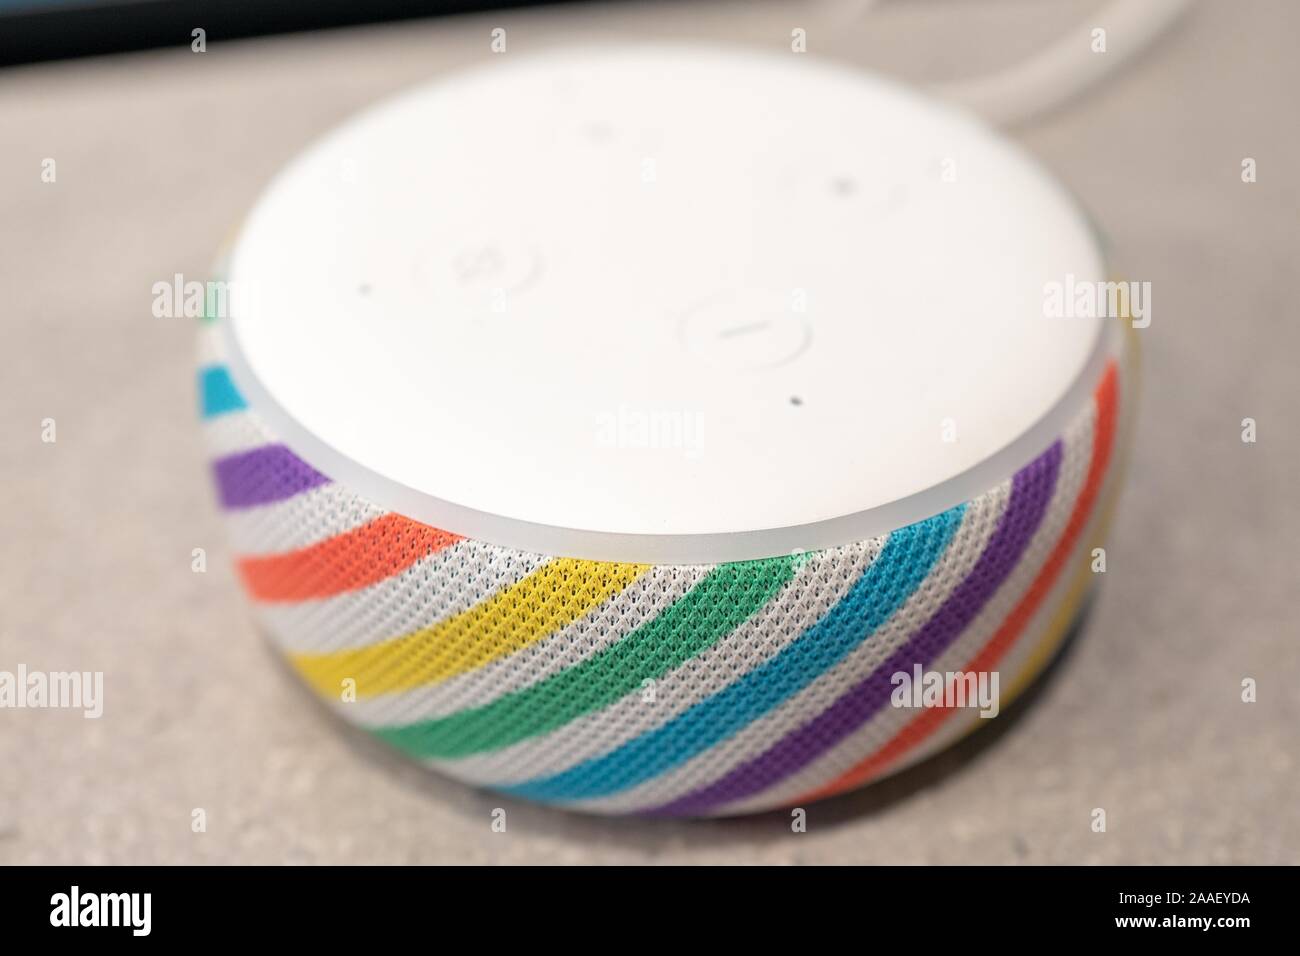 In der Nähe von neu-freigegebenen Amazon Echo Dot Kids Edition smart  Lautsprecher, für die Nutzung durch Kinder entworfen, mit Regenbogen  Farbschema, mit dem Alexa Voice Assistant, 31. August 2019 Stockfotografie  - Alamy